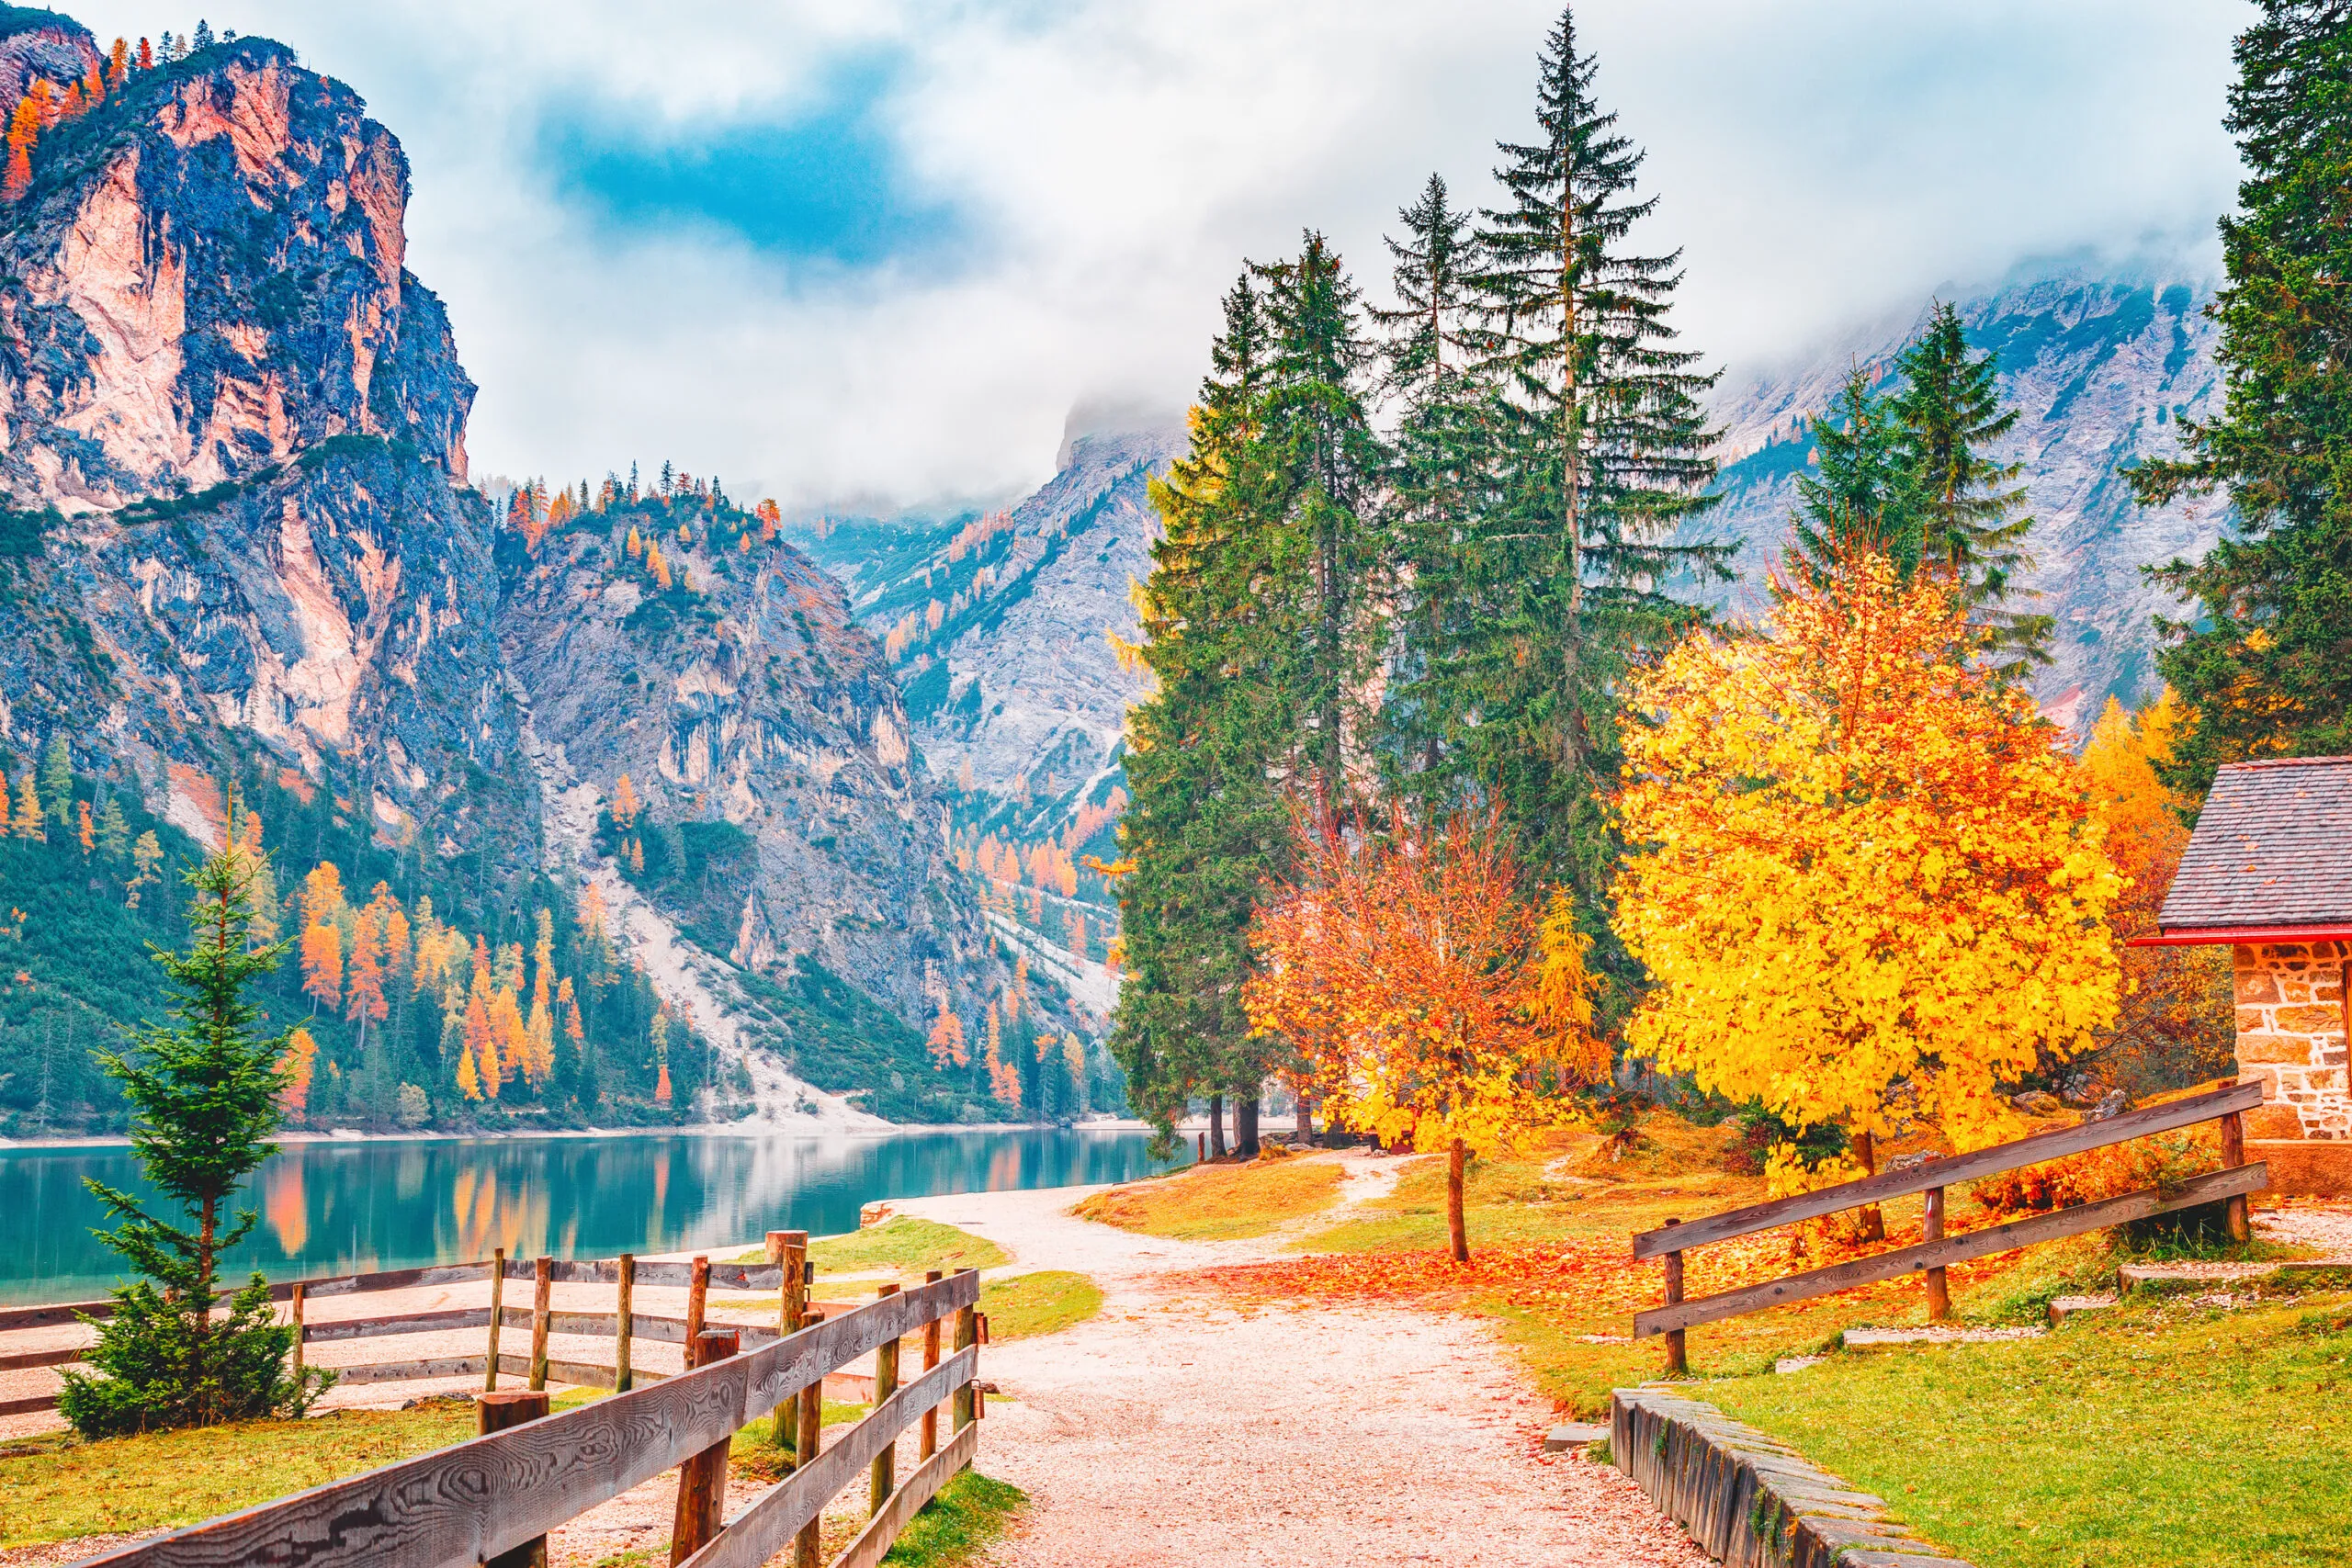 Paysage d'automne du lac Braies - lago di Braies à l'arrière-plan des Alpes dans le Tyrol du Sud en Italie. C'est une destination de voyage célèbre et très populaire en Europe. Paysage d'automne avec des arbres aux feuilles jaunes au bord du lac.